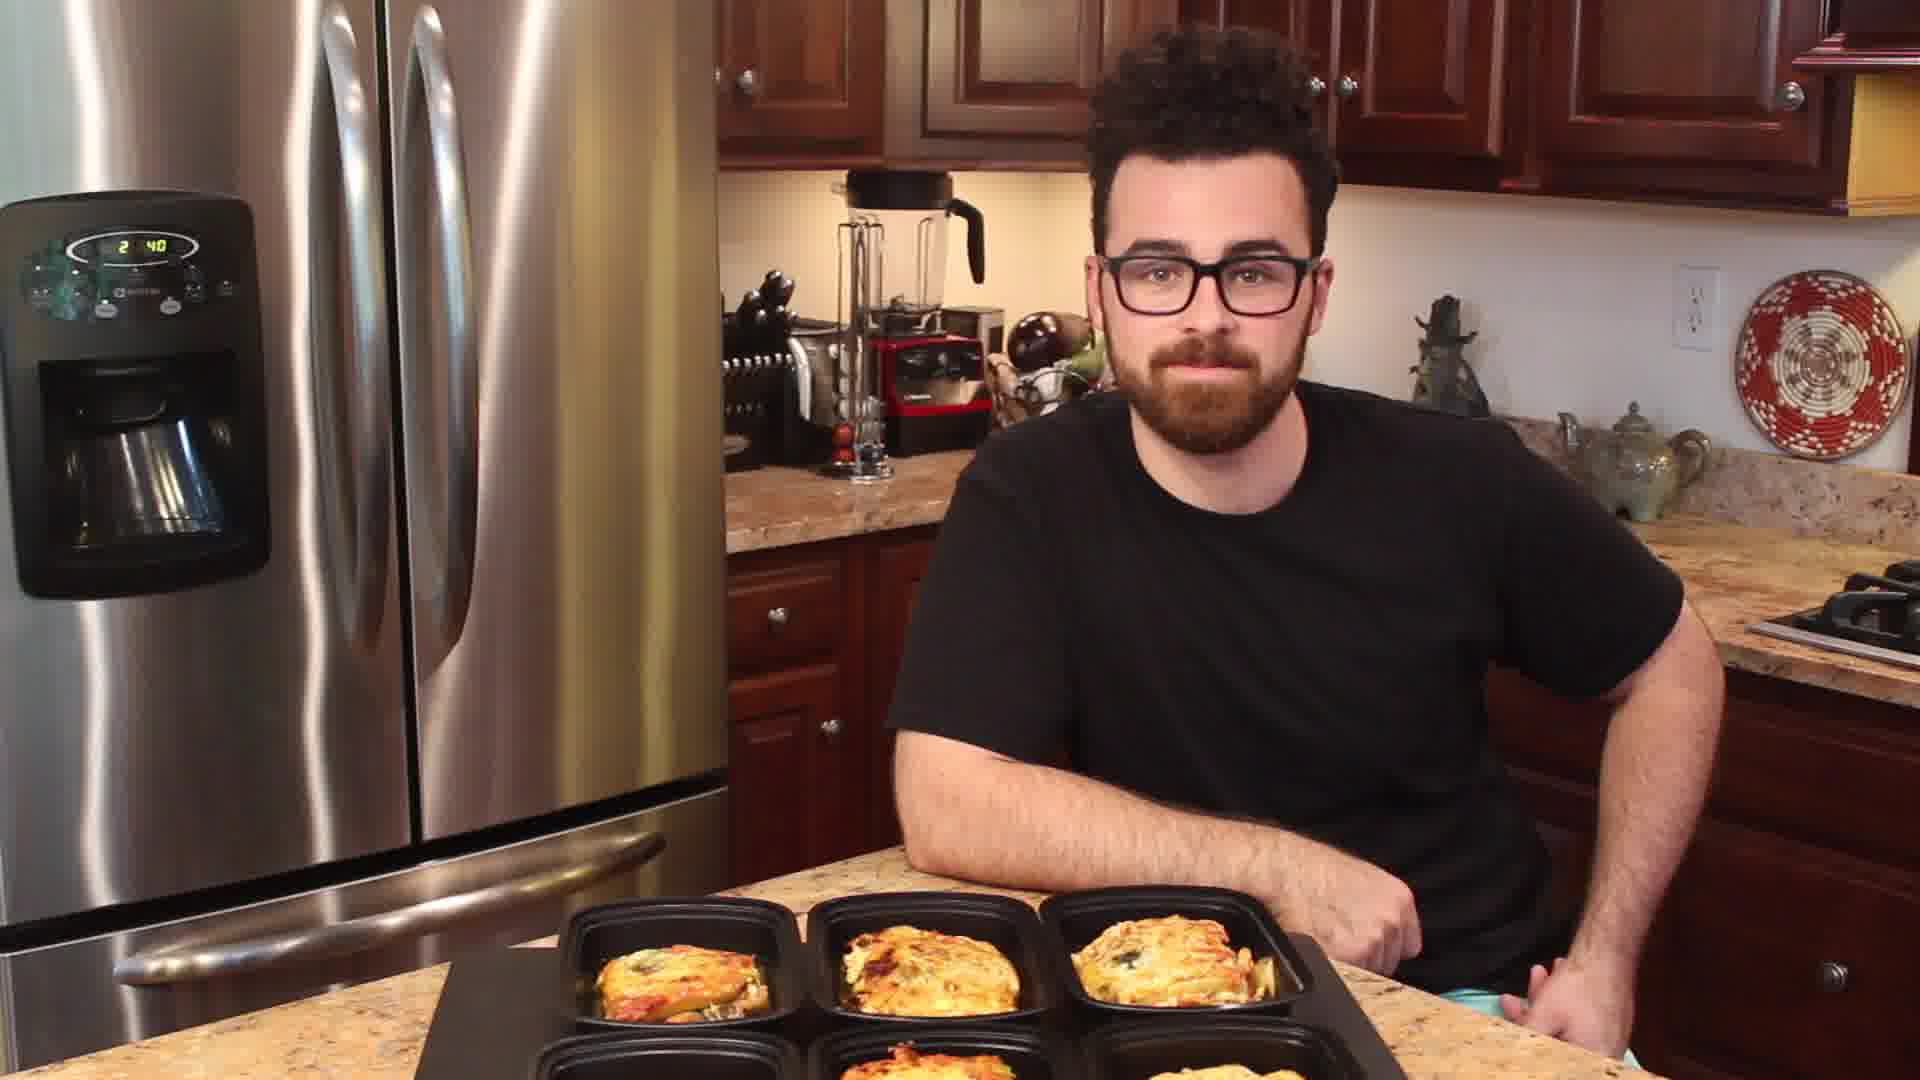  vegetarian lasagna recipe